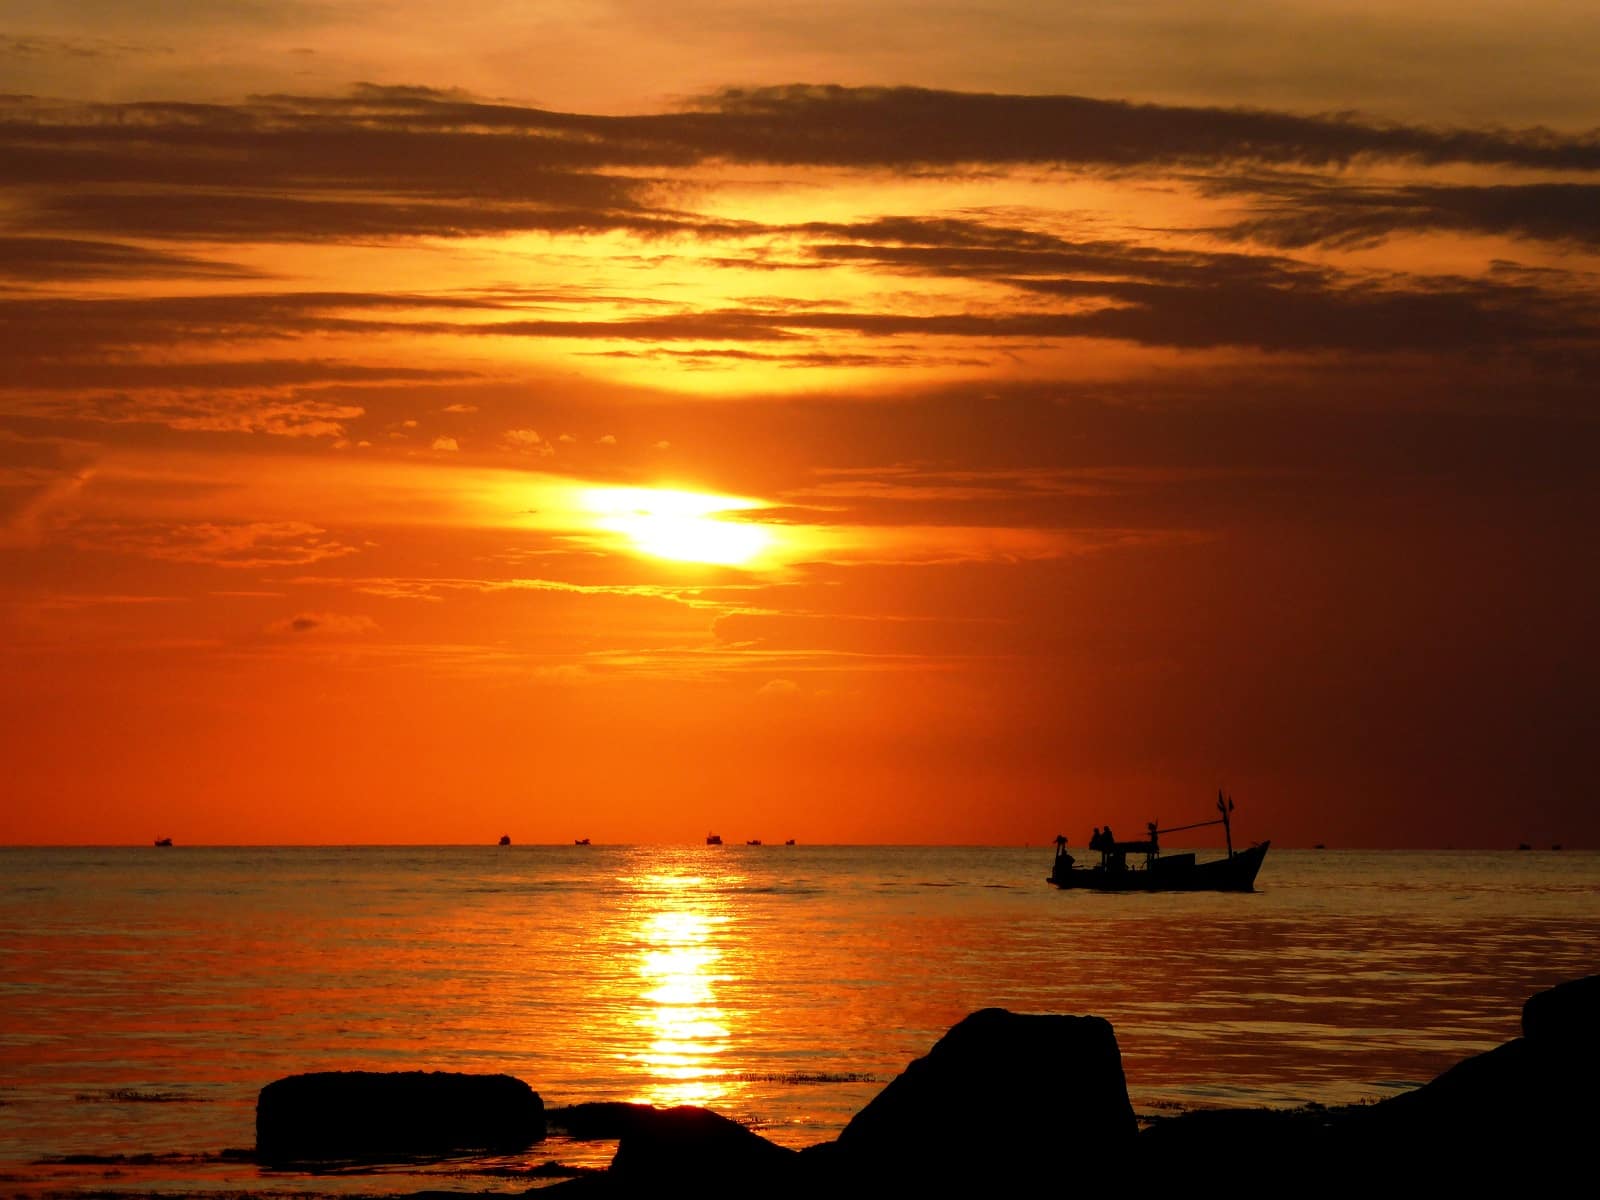 Lire la suite à propos de l’article Les plages du Sud Vietnam : Hoi An, Mui Ne et Phu Quoc